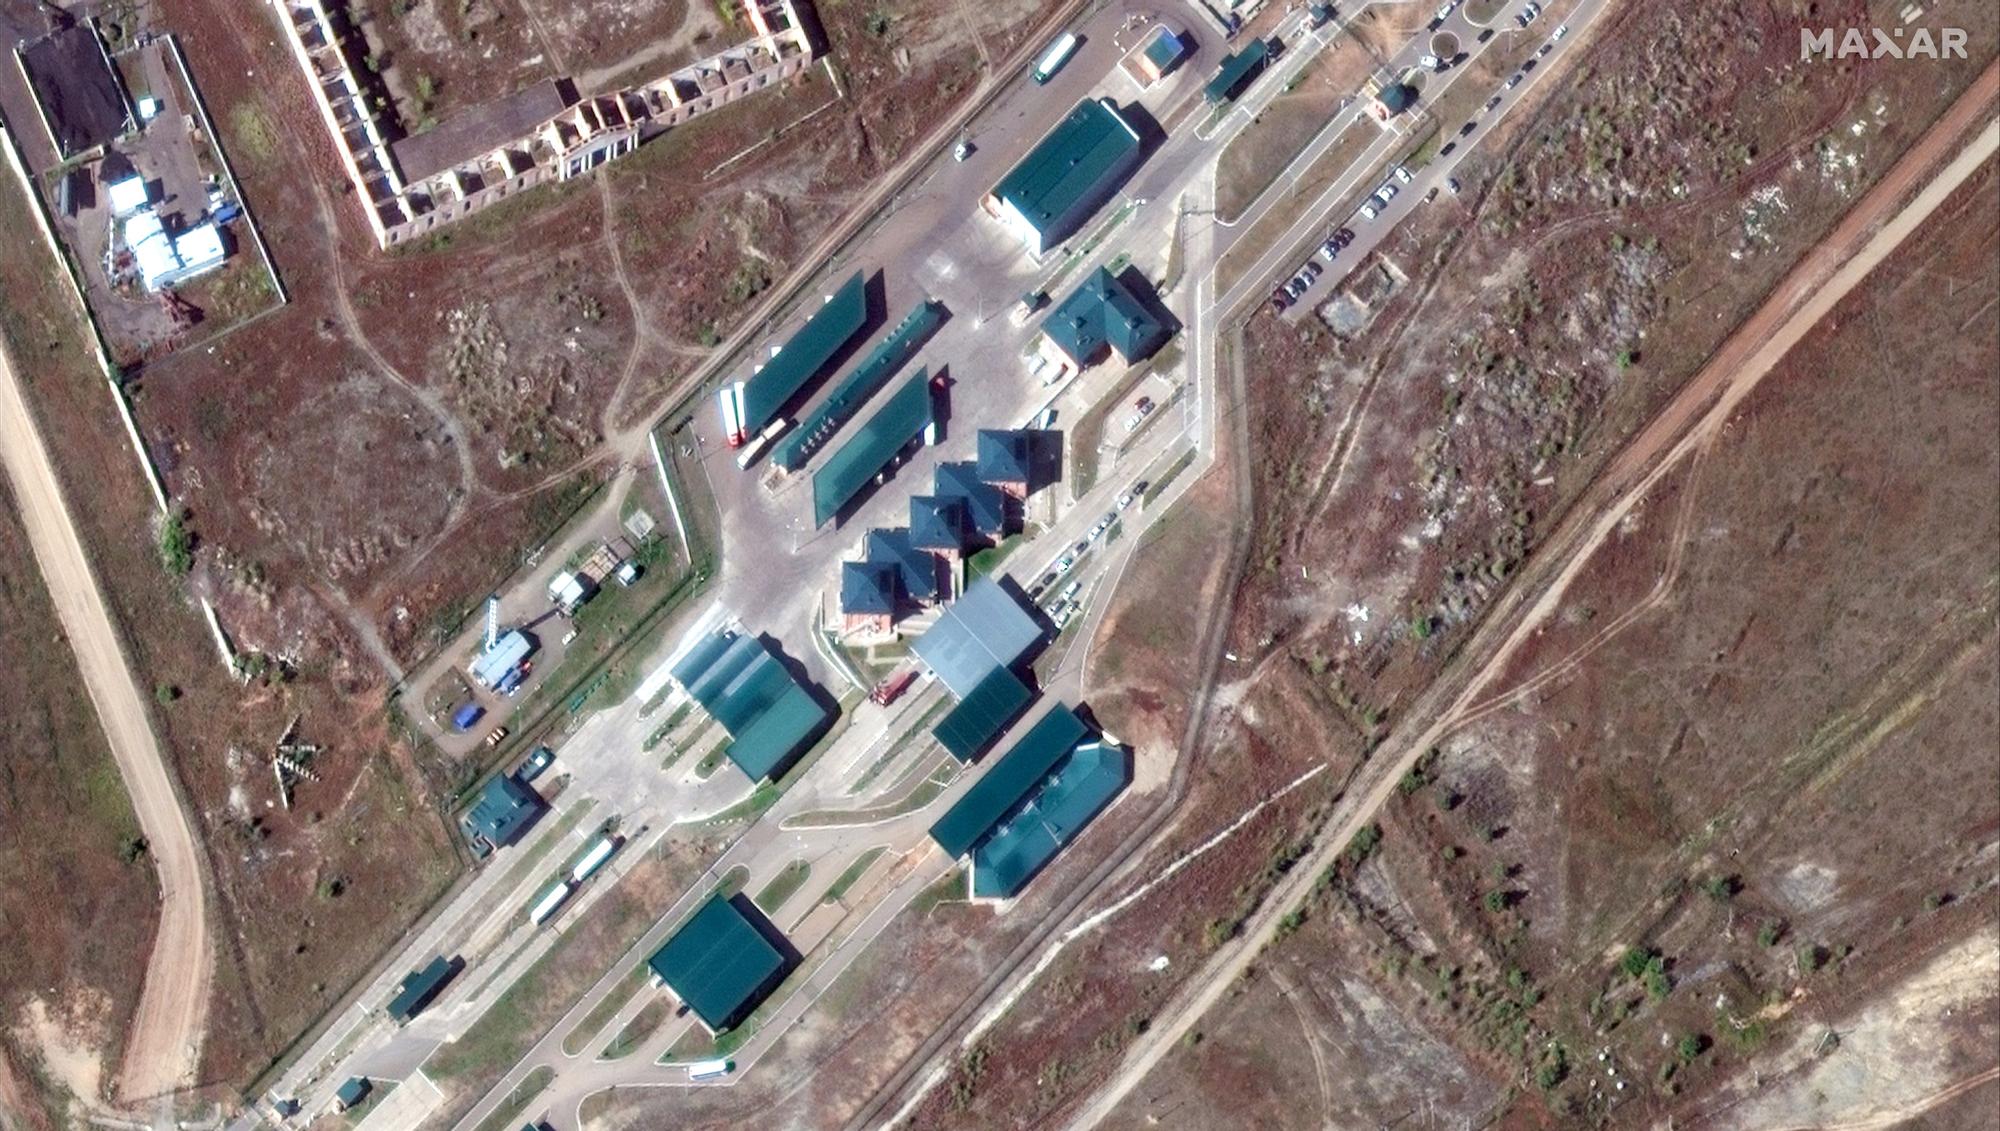 Colas de camiones y coches esperando en el puerto fronterizo de Khyagt, en la frontera rusa con Mongolia, en una imagen de satélite.